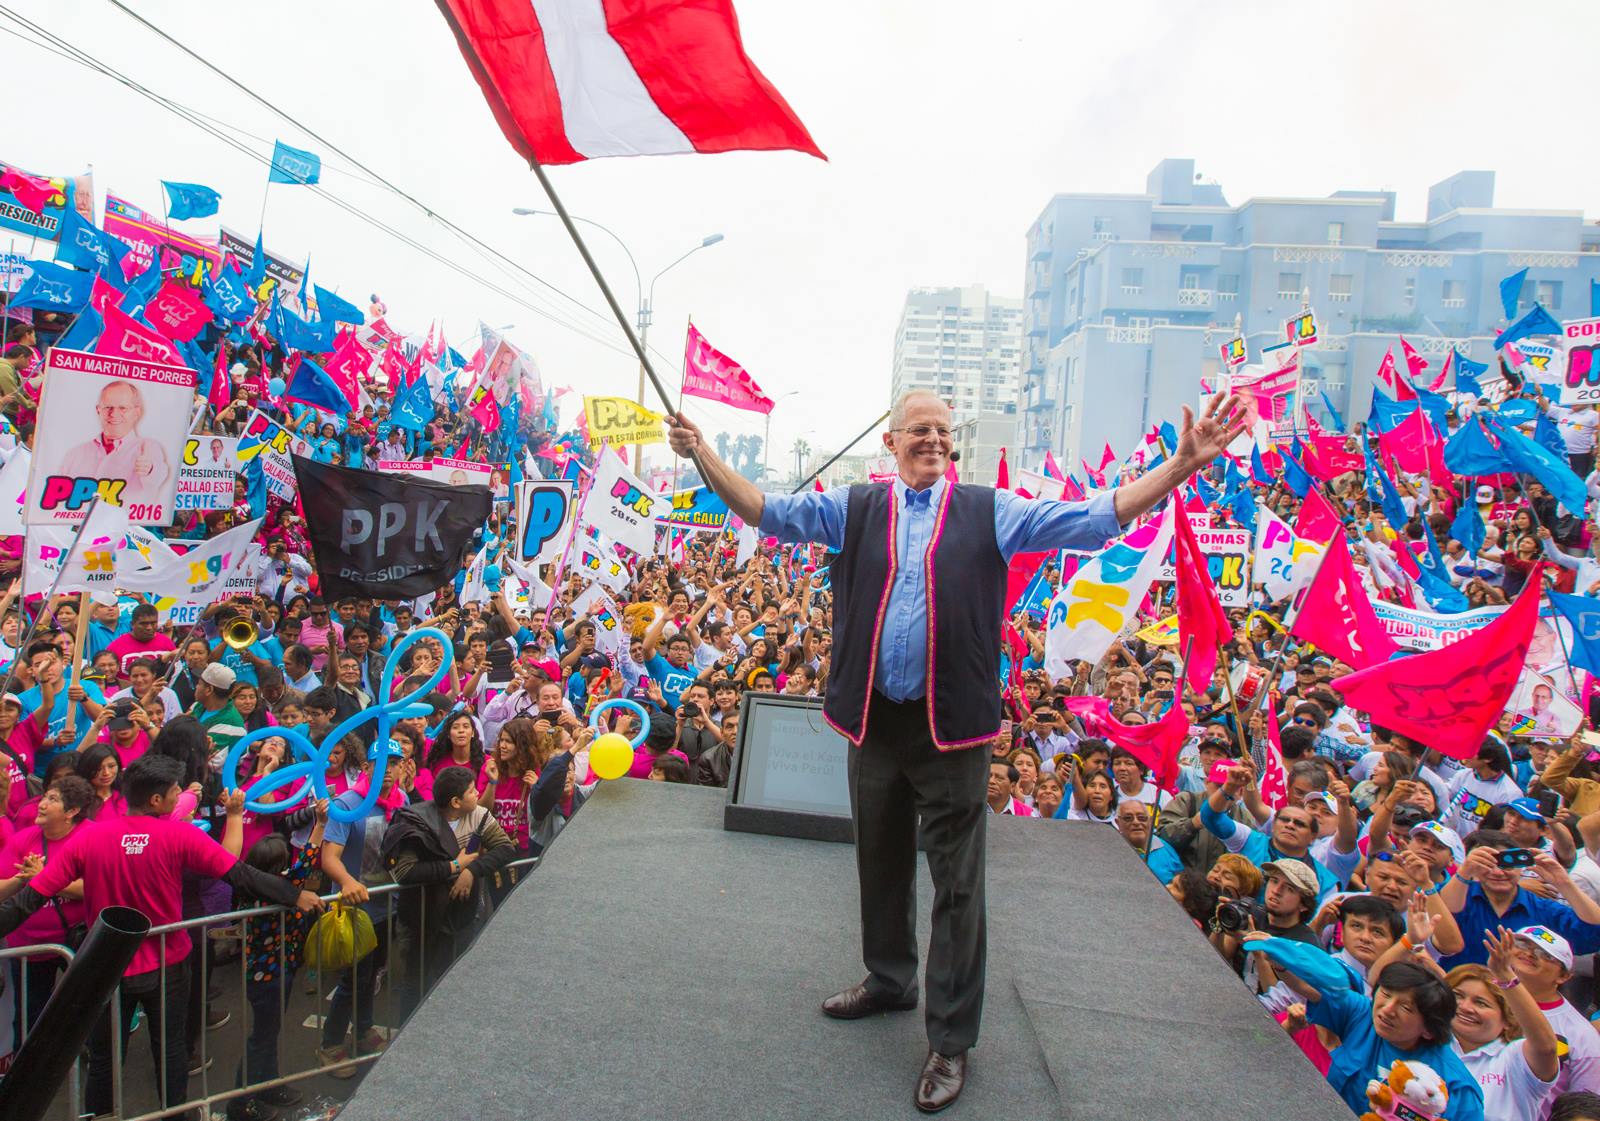 Pedro Pablo kuczynski sería el nuevo presidente del Perú y debe asumir retos. Foto: Mitin PPK cuenta facebook